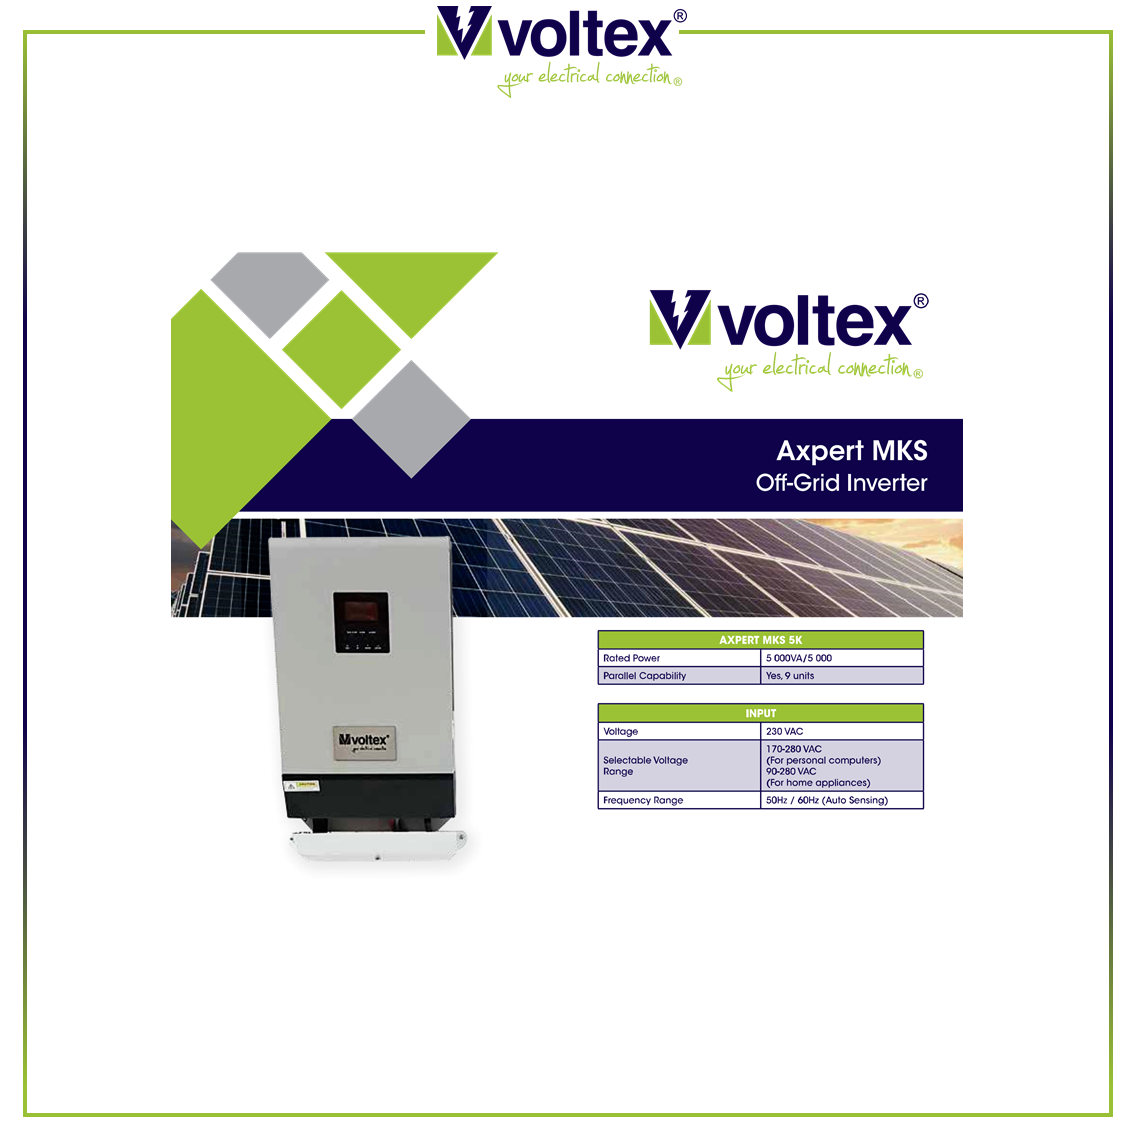 VOLTEX - Axpert-Inverter Catalogue